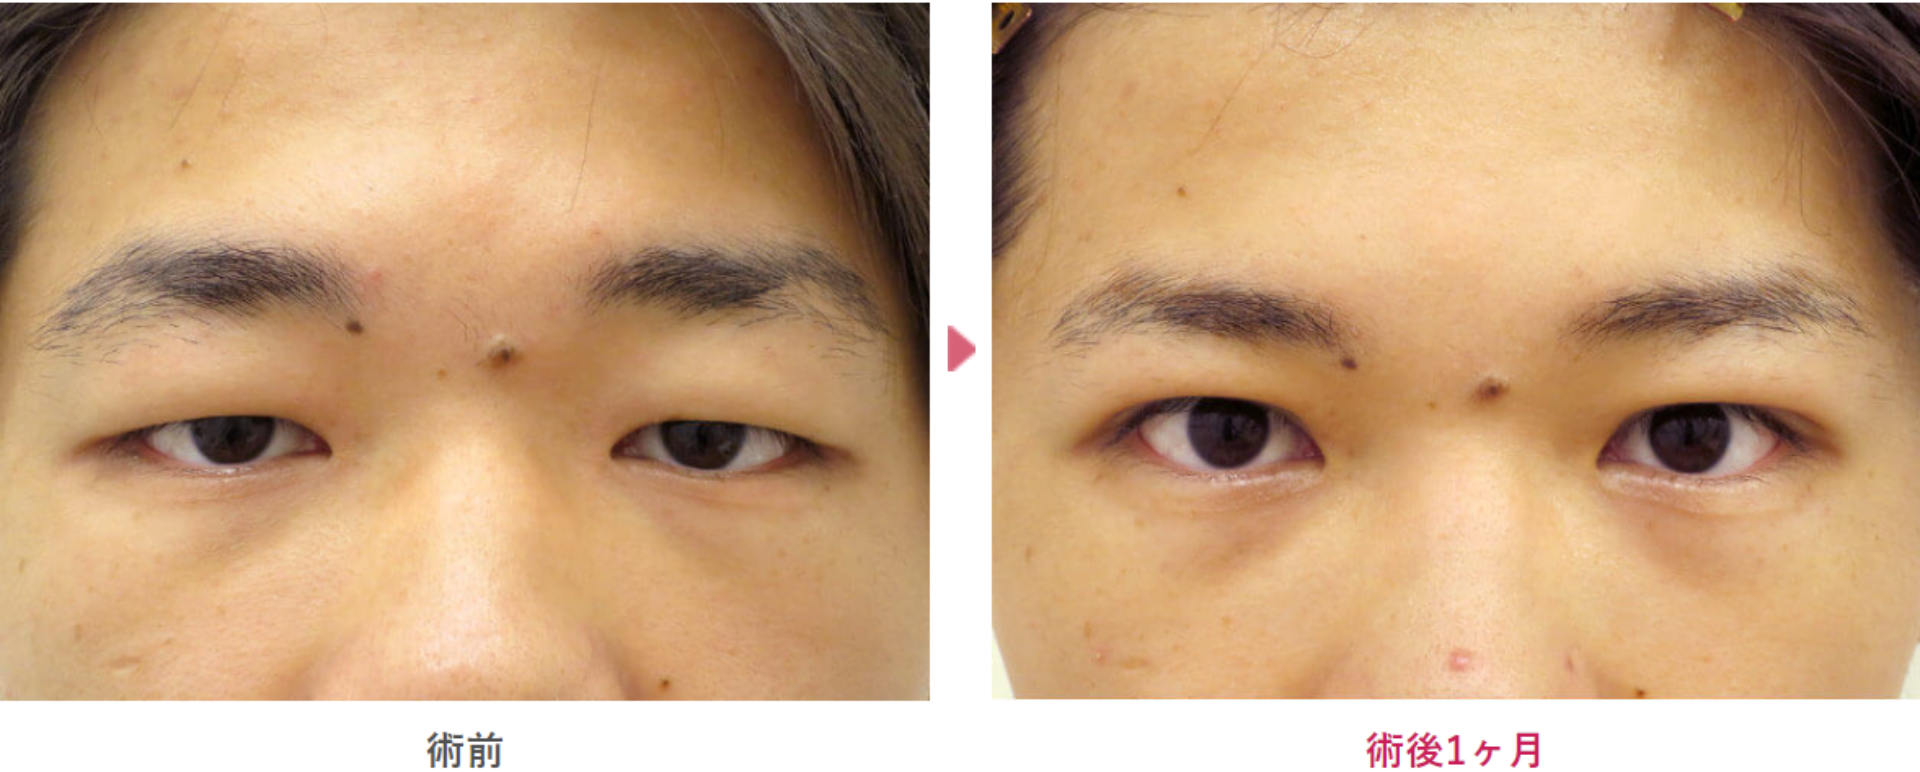 皮膚や脂肪が厚い二重埋没法の術前と術後1ヶ月の見た目の変化を表す症例写真